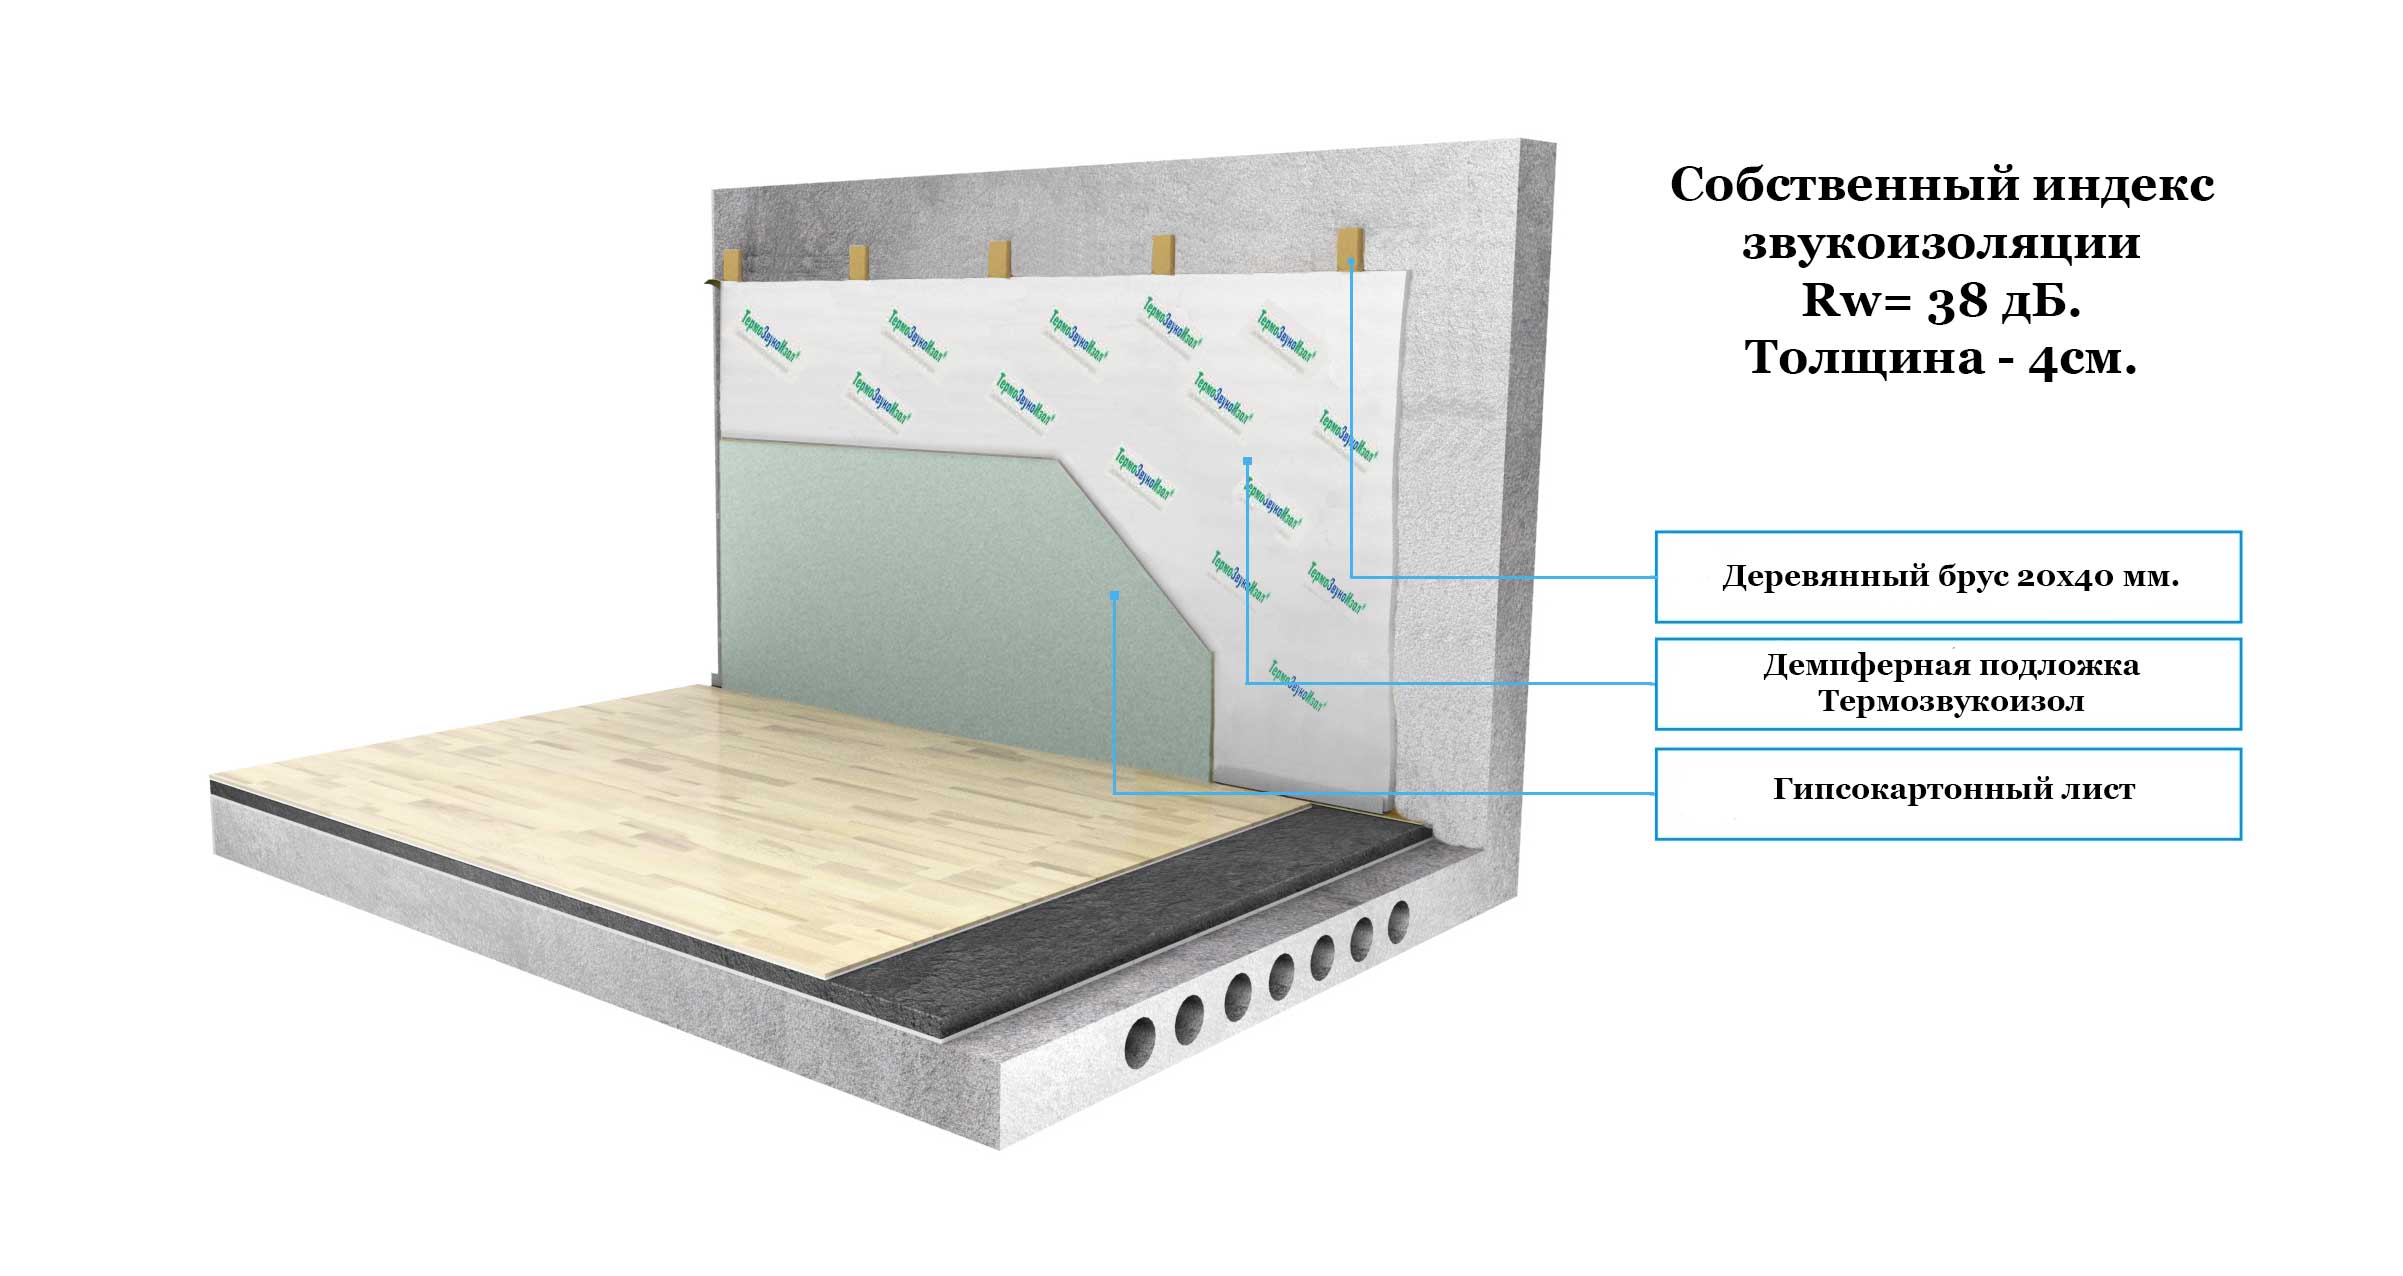 Как сделать шумоизоляцию потолка?